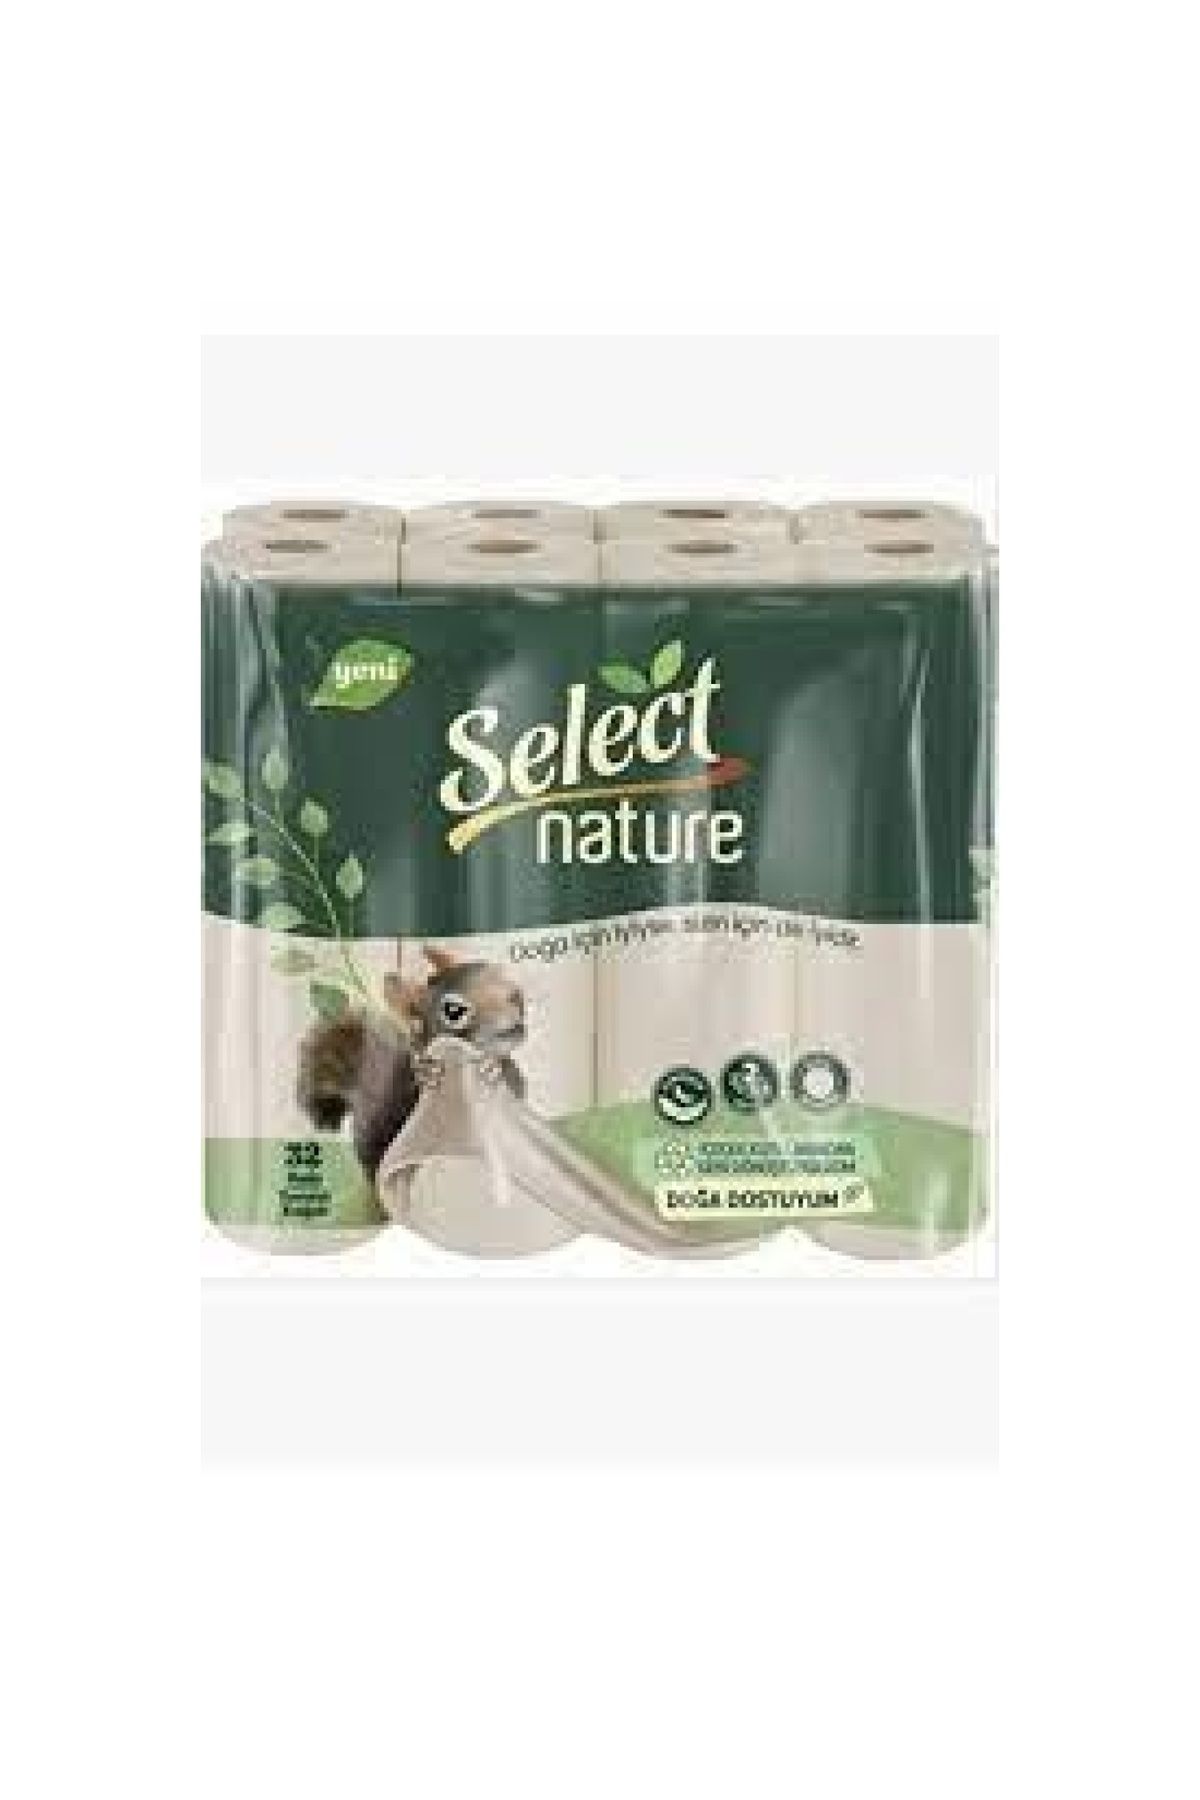 SELECT Nature Tuvalet Kağıdı 32'li (4'LÜ)